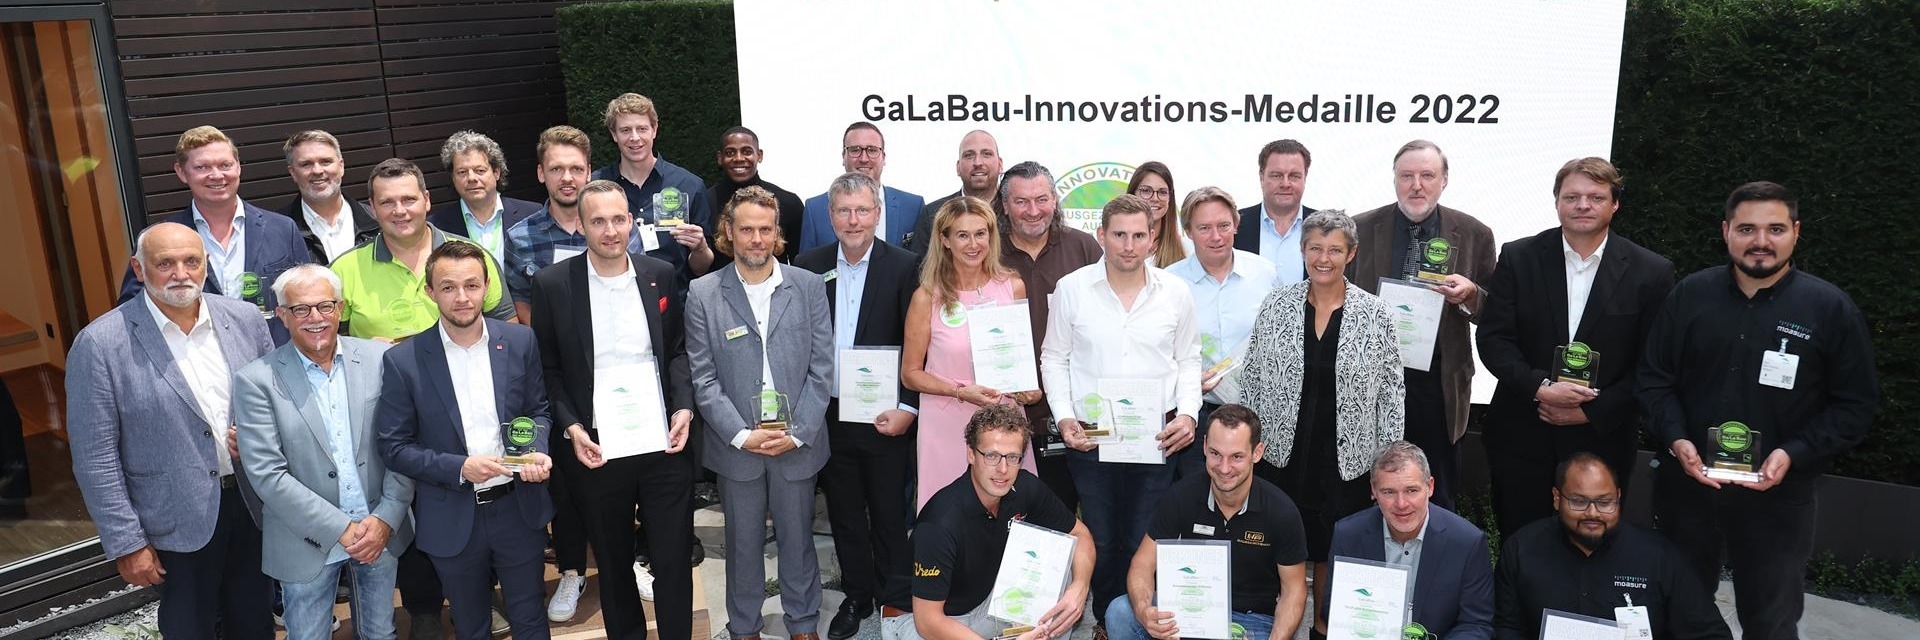 Gewinner der Innovationsmedaille auf der GaLaBau 2022